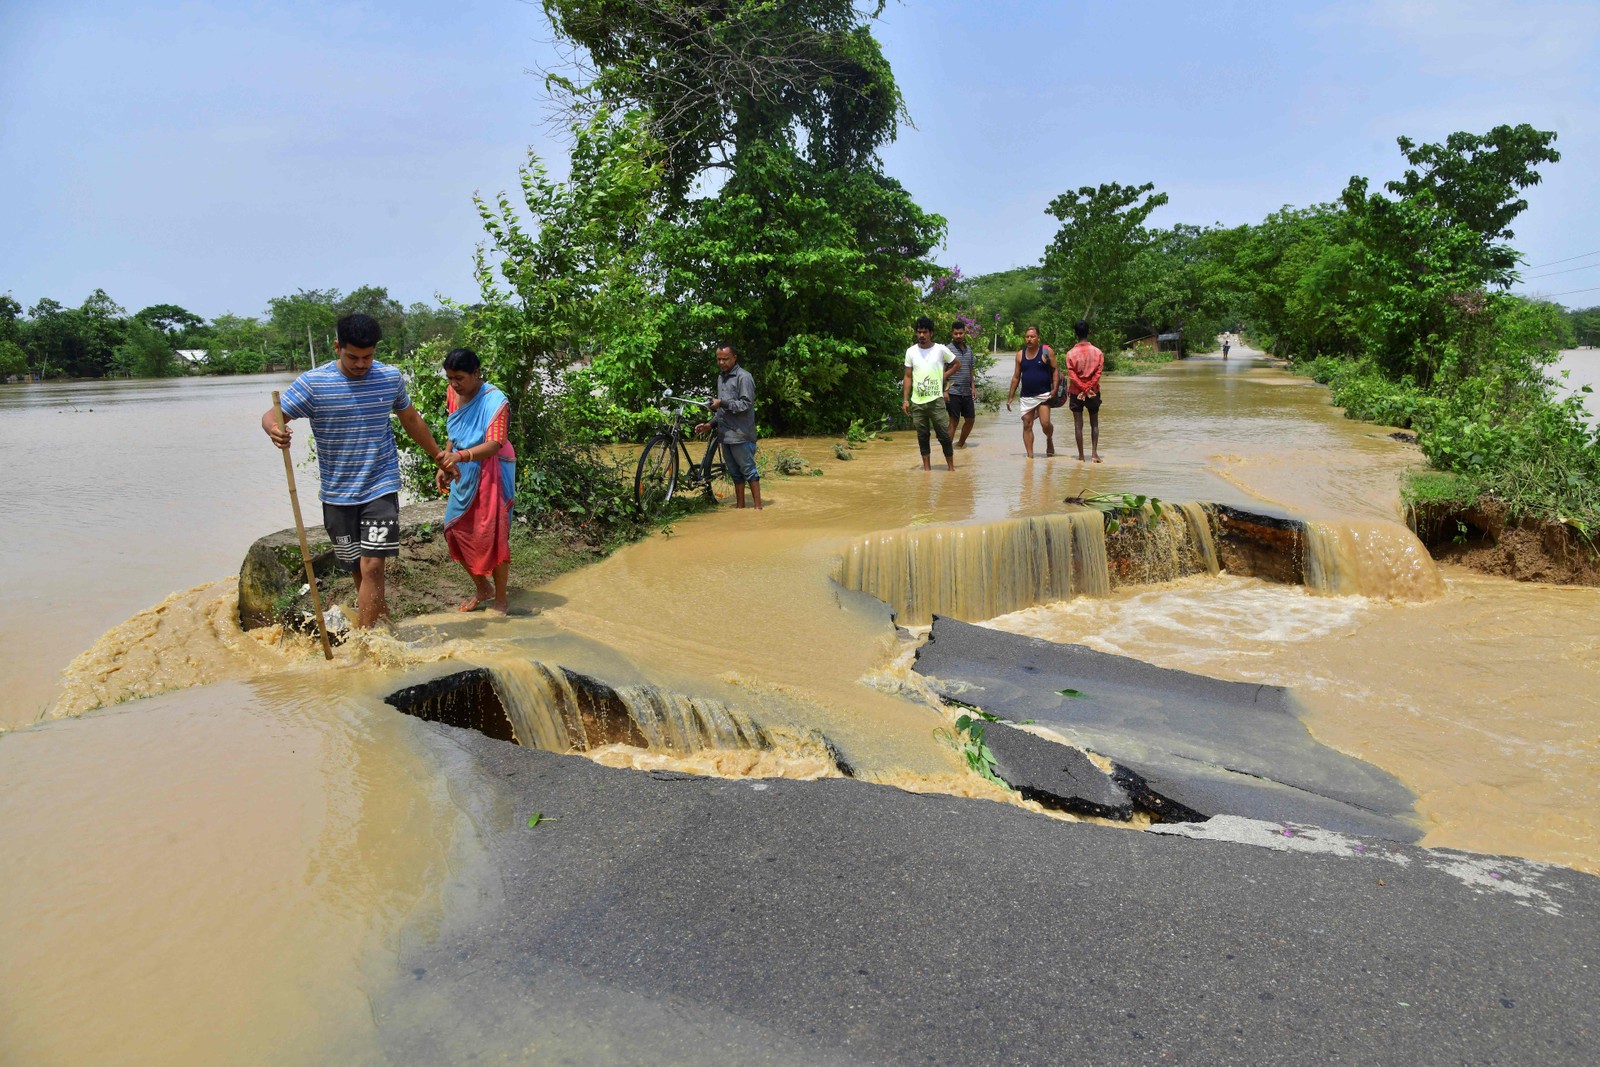 Pessoas atravessam uma estrada danificada pelas águas da enchente após fortes chuvas no distrito de Nagaon, estado de Assam, em 19 de maio. — Foto: Biju BORO / AFP